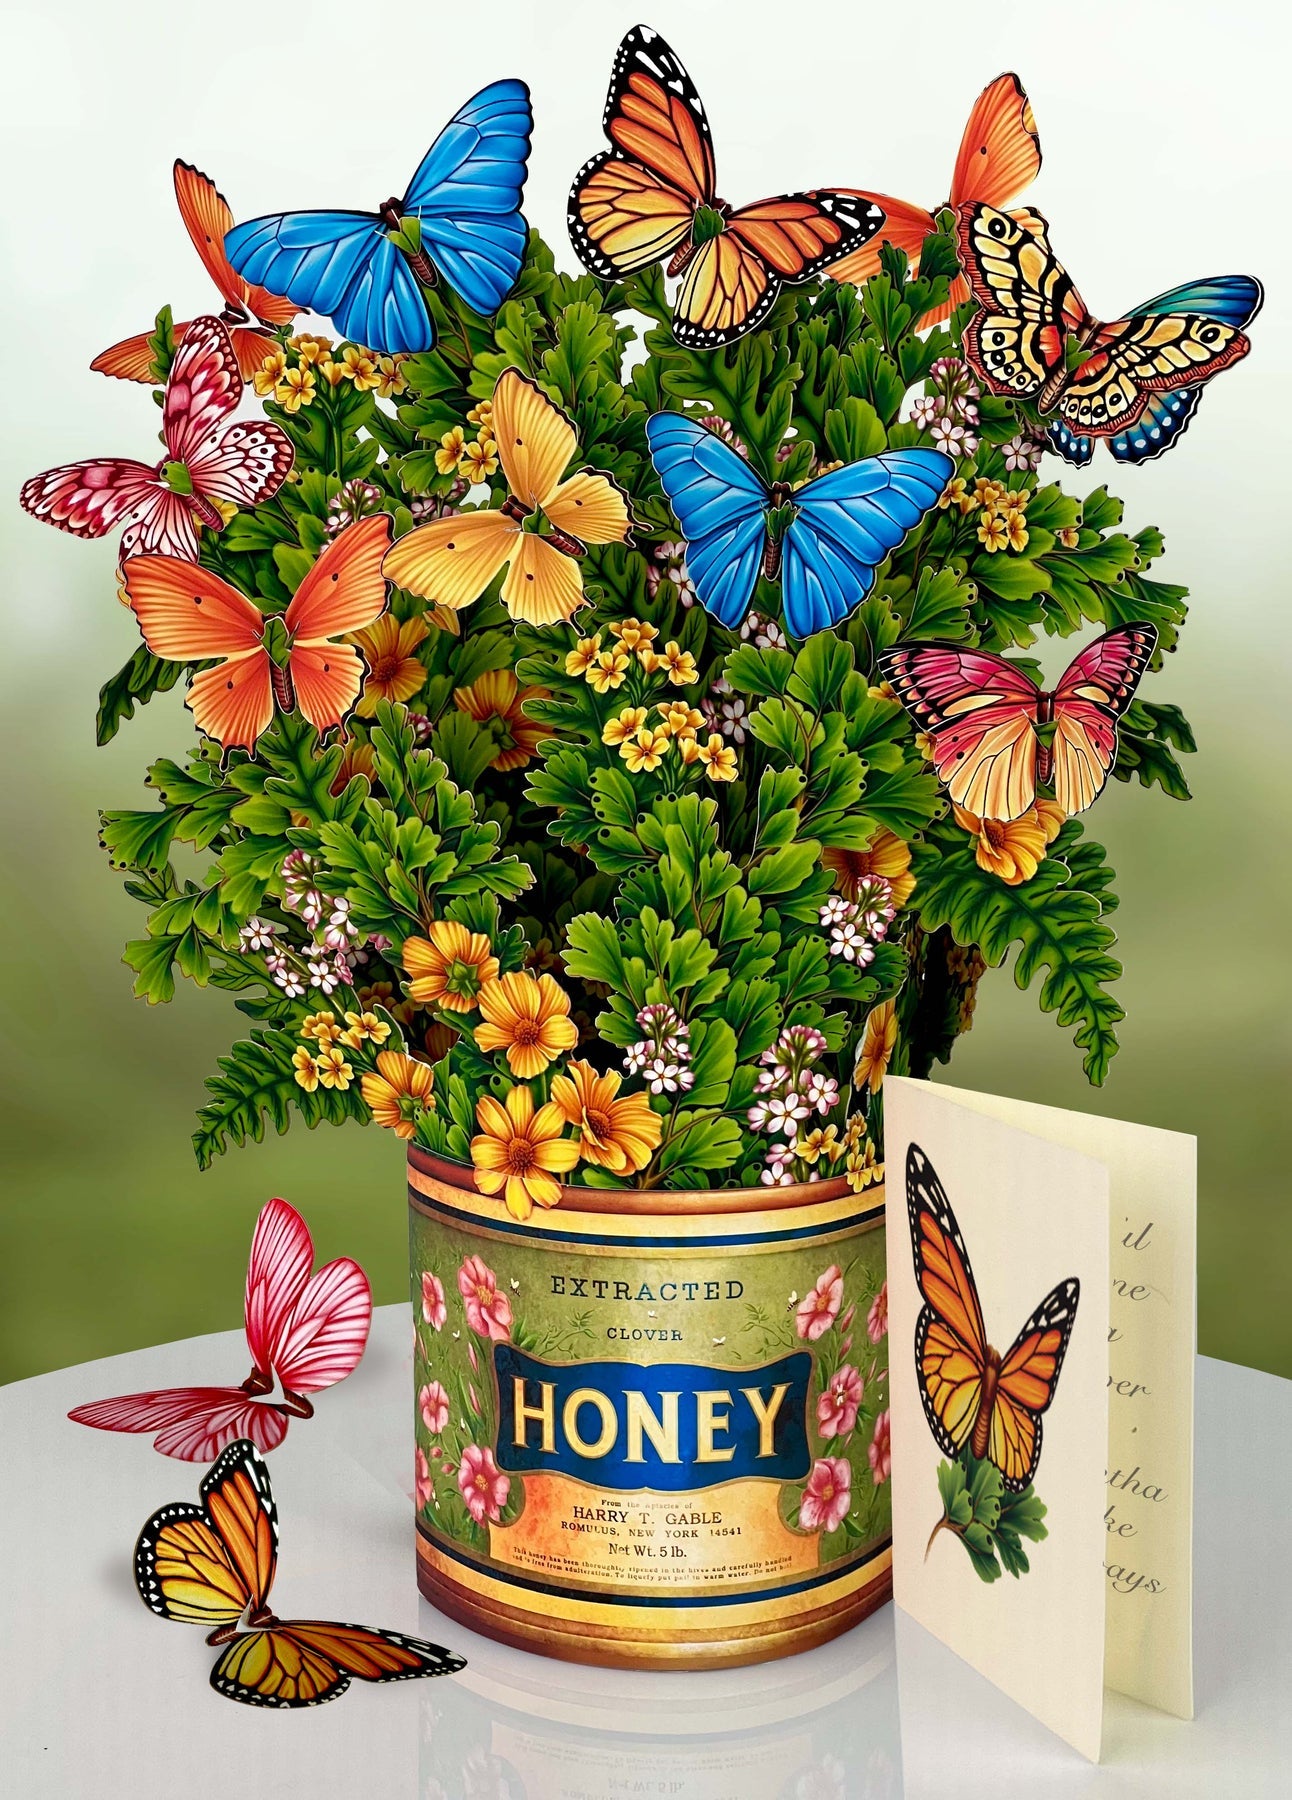 Butterflies & Buttercups 3D Pop Up Bouquet